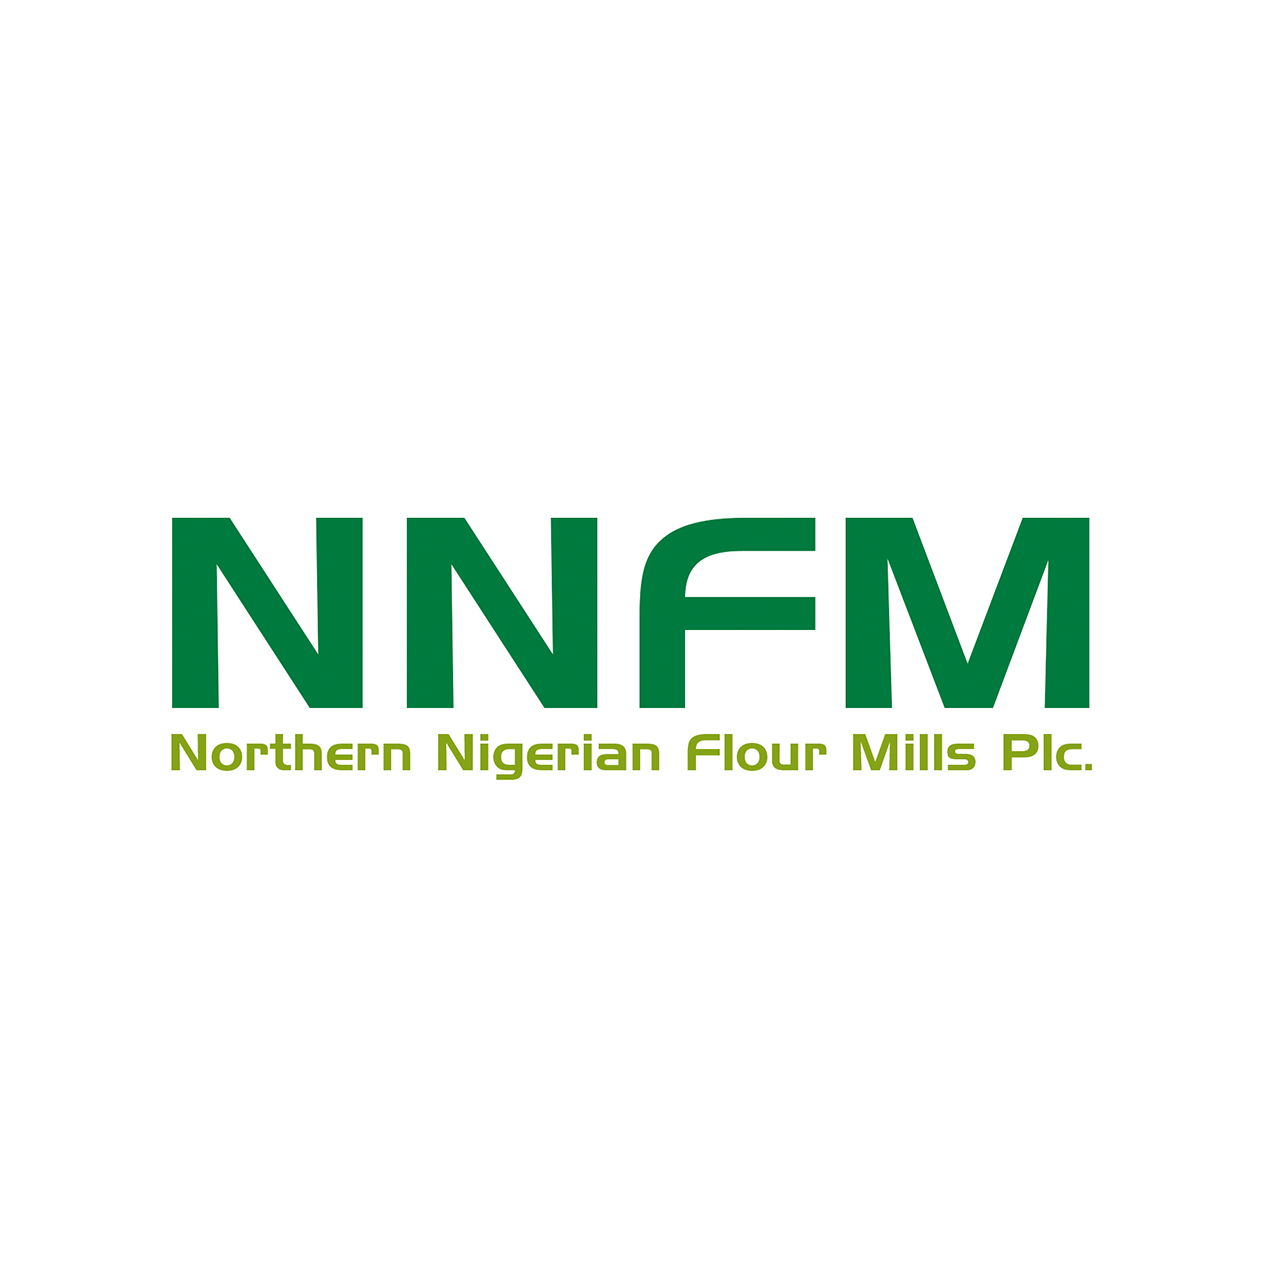 northern nigerian flour mills